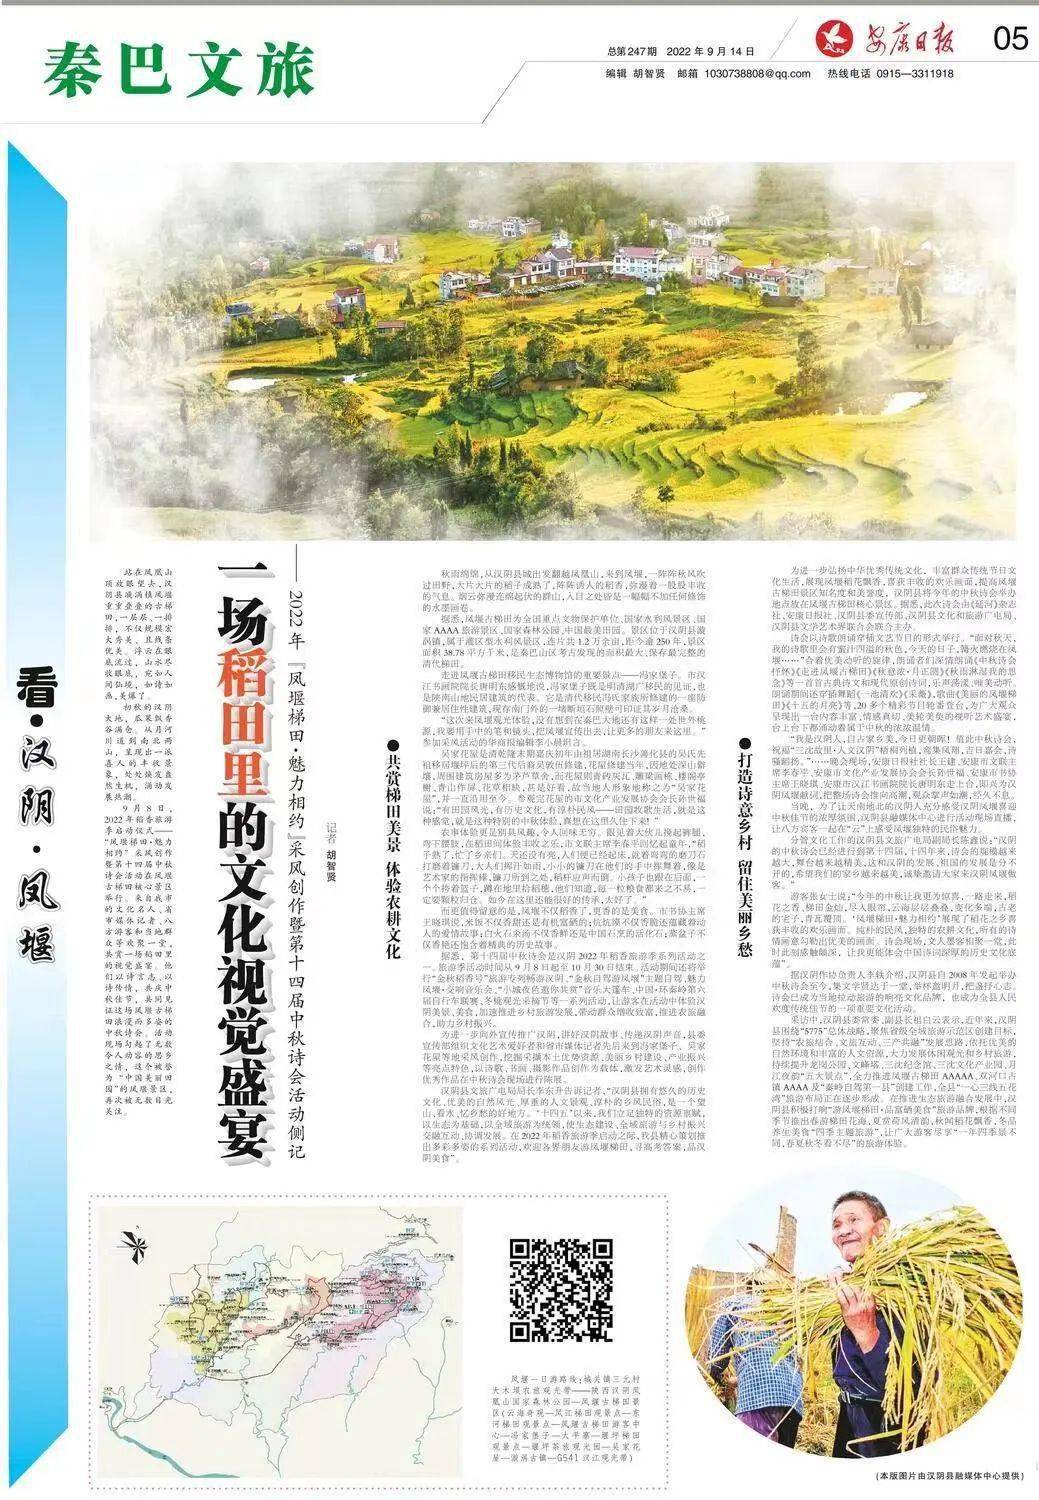 【县域纵横·汉阴】看·汉阴·凤堰 | 一场稻田里的文化视觉盛宴